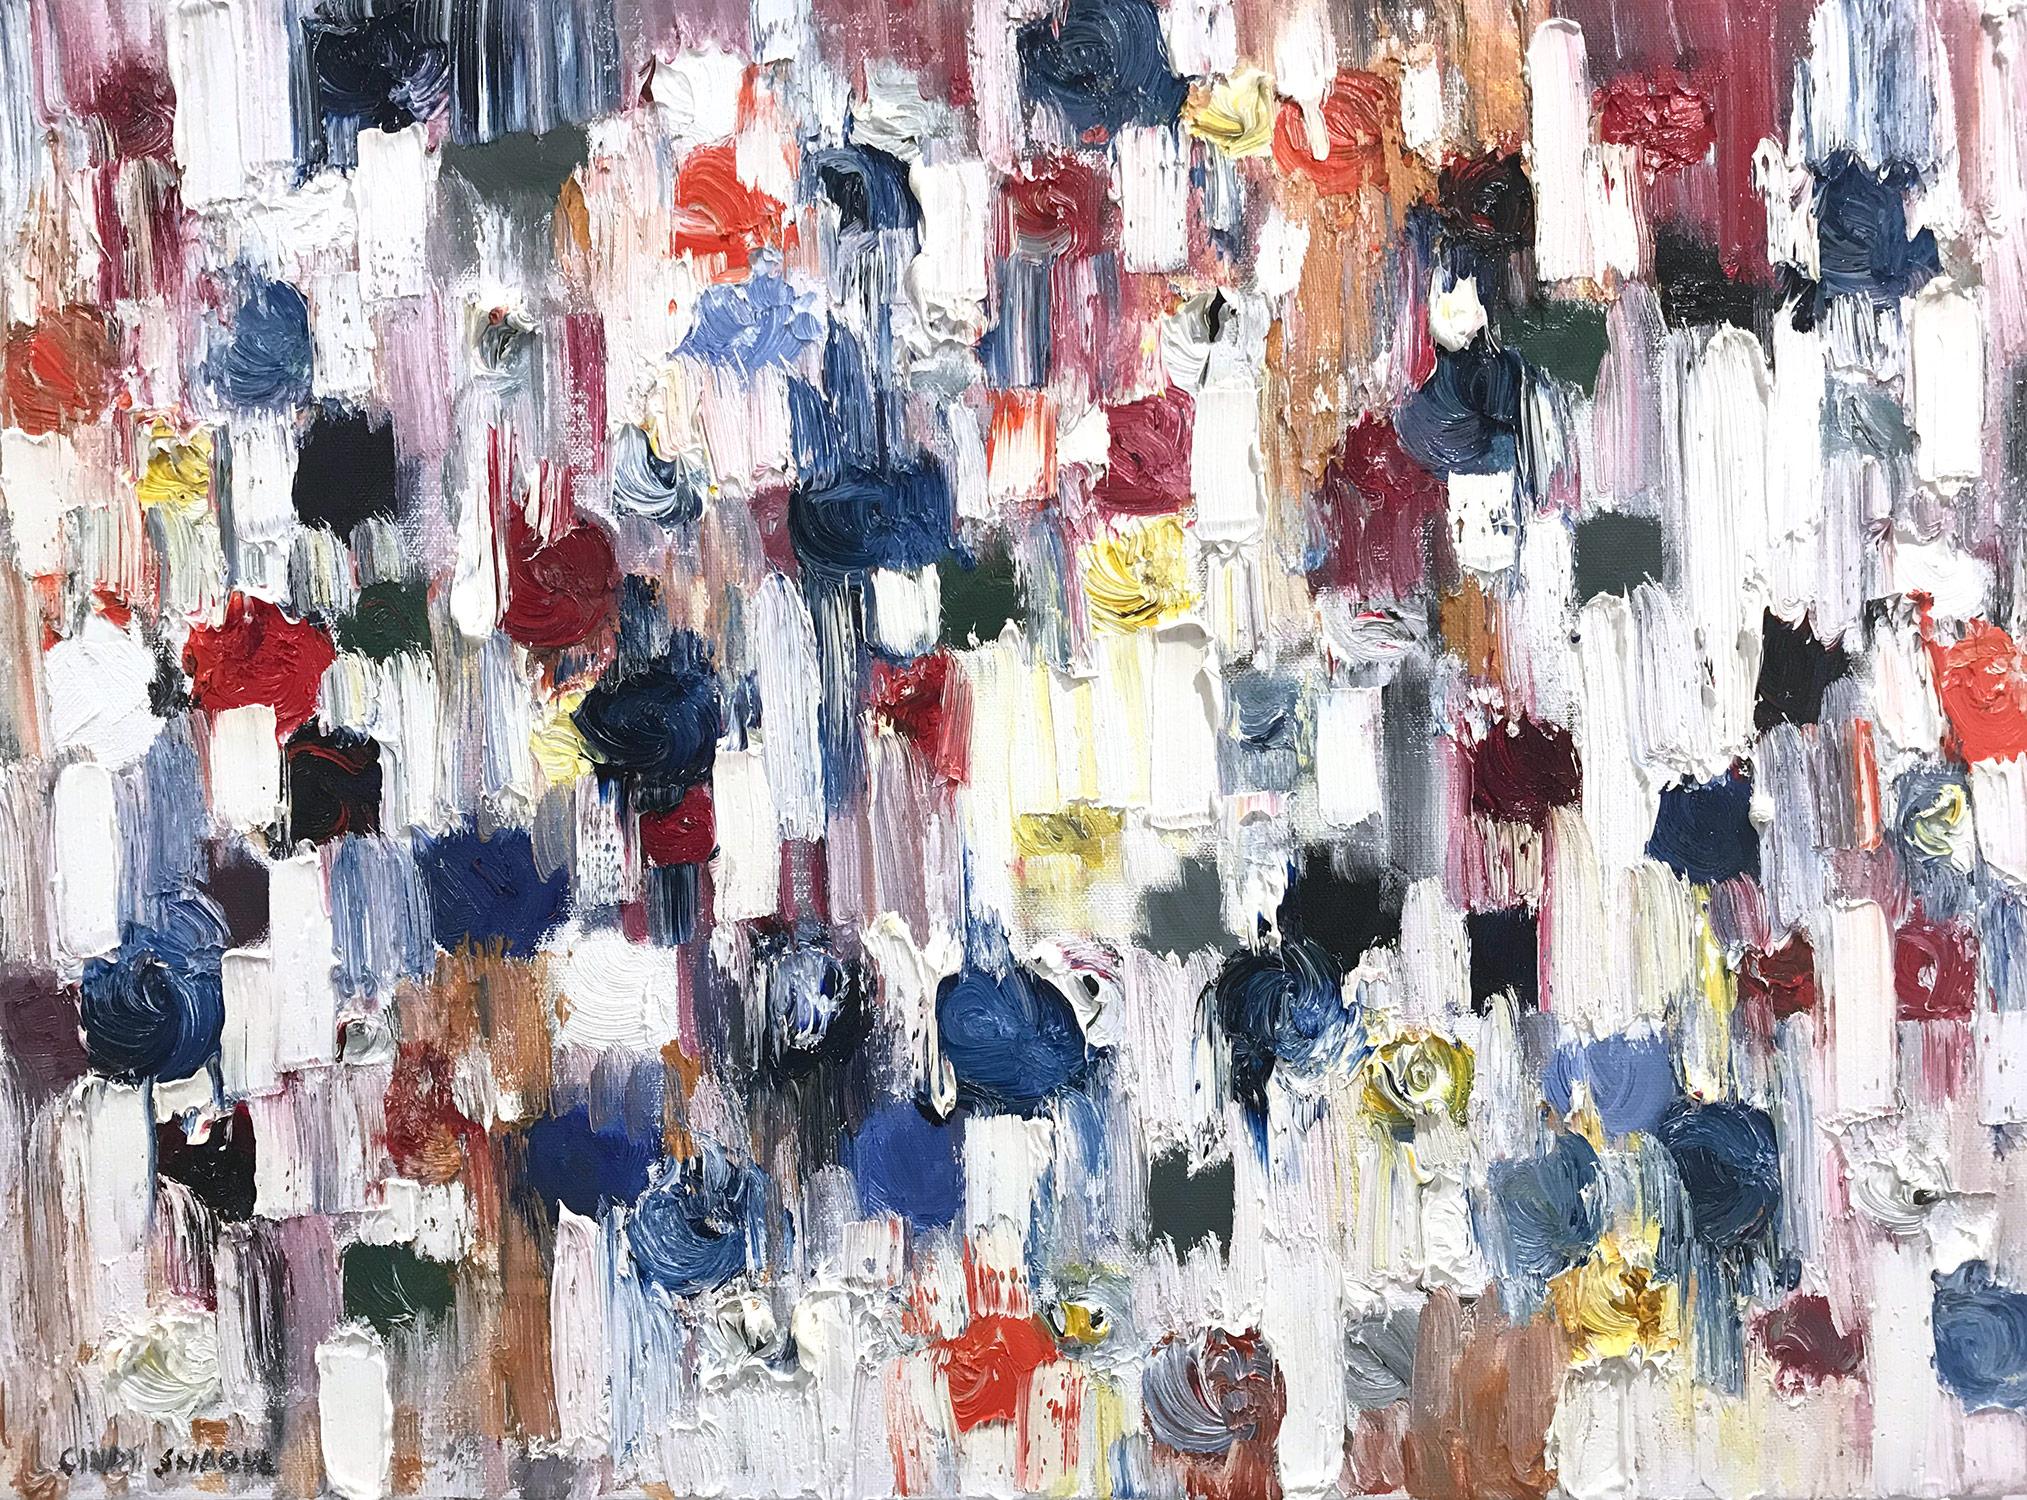 Abstract Painting Cindy Shaoul - "Dripping Dots - Milan" - Peinture à l'huile abstraite colorée sur toile